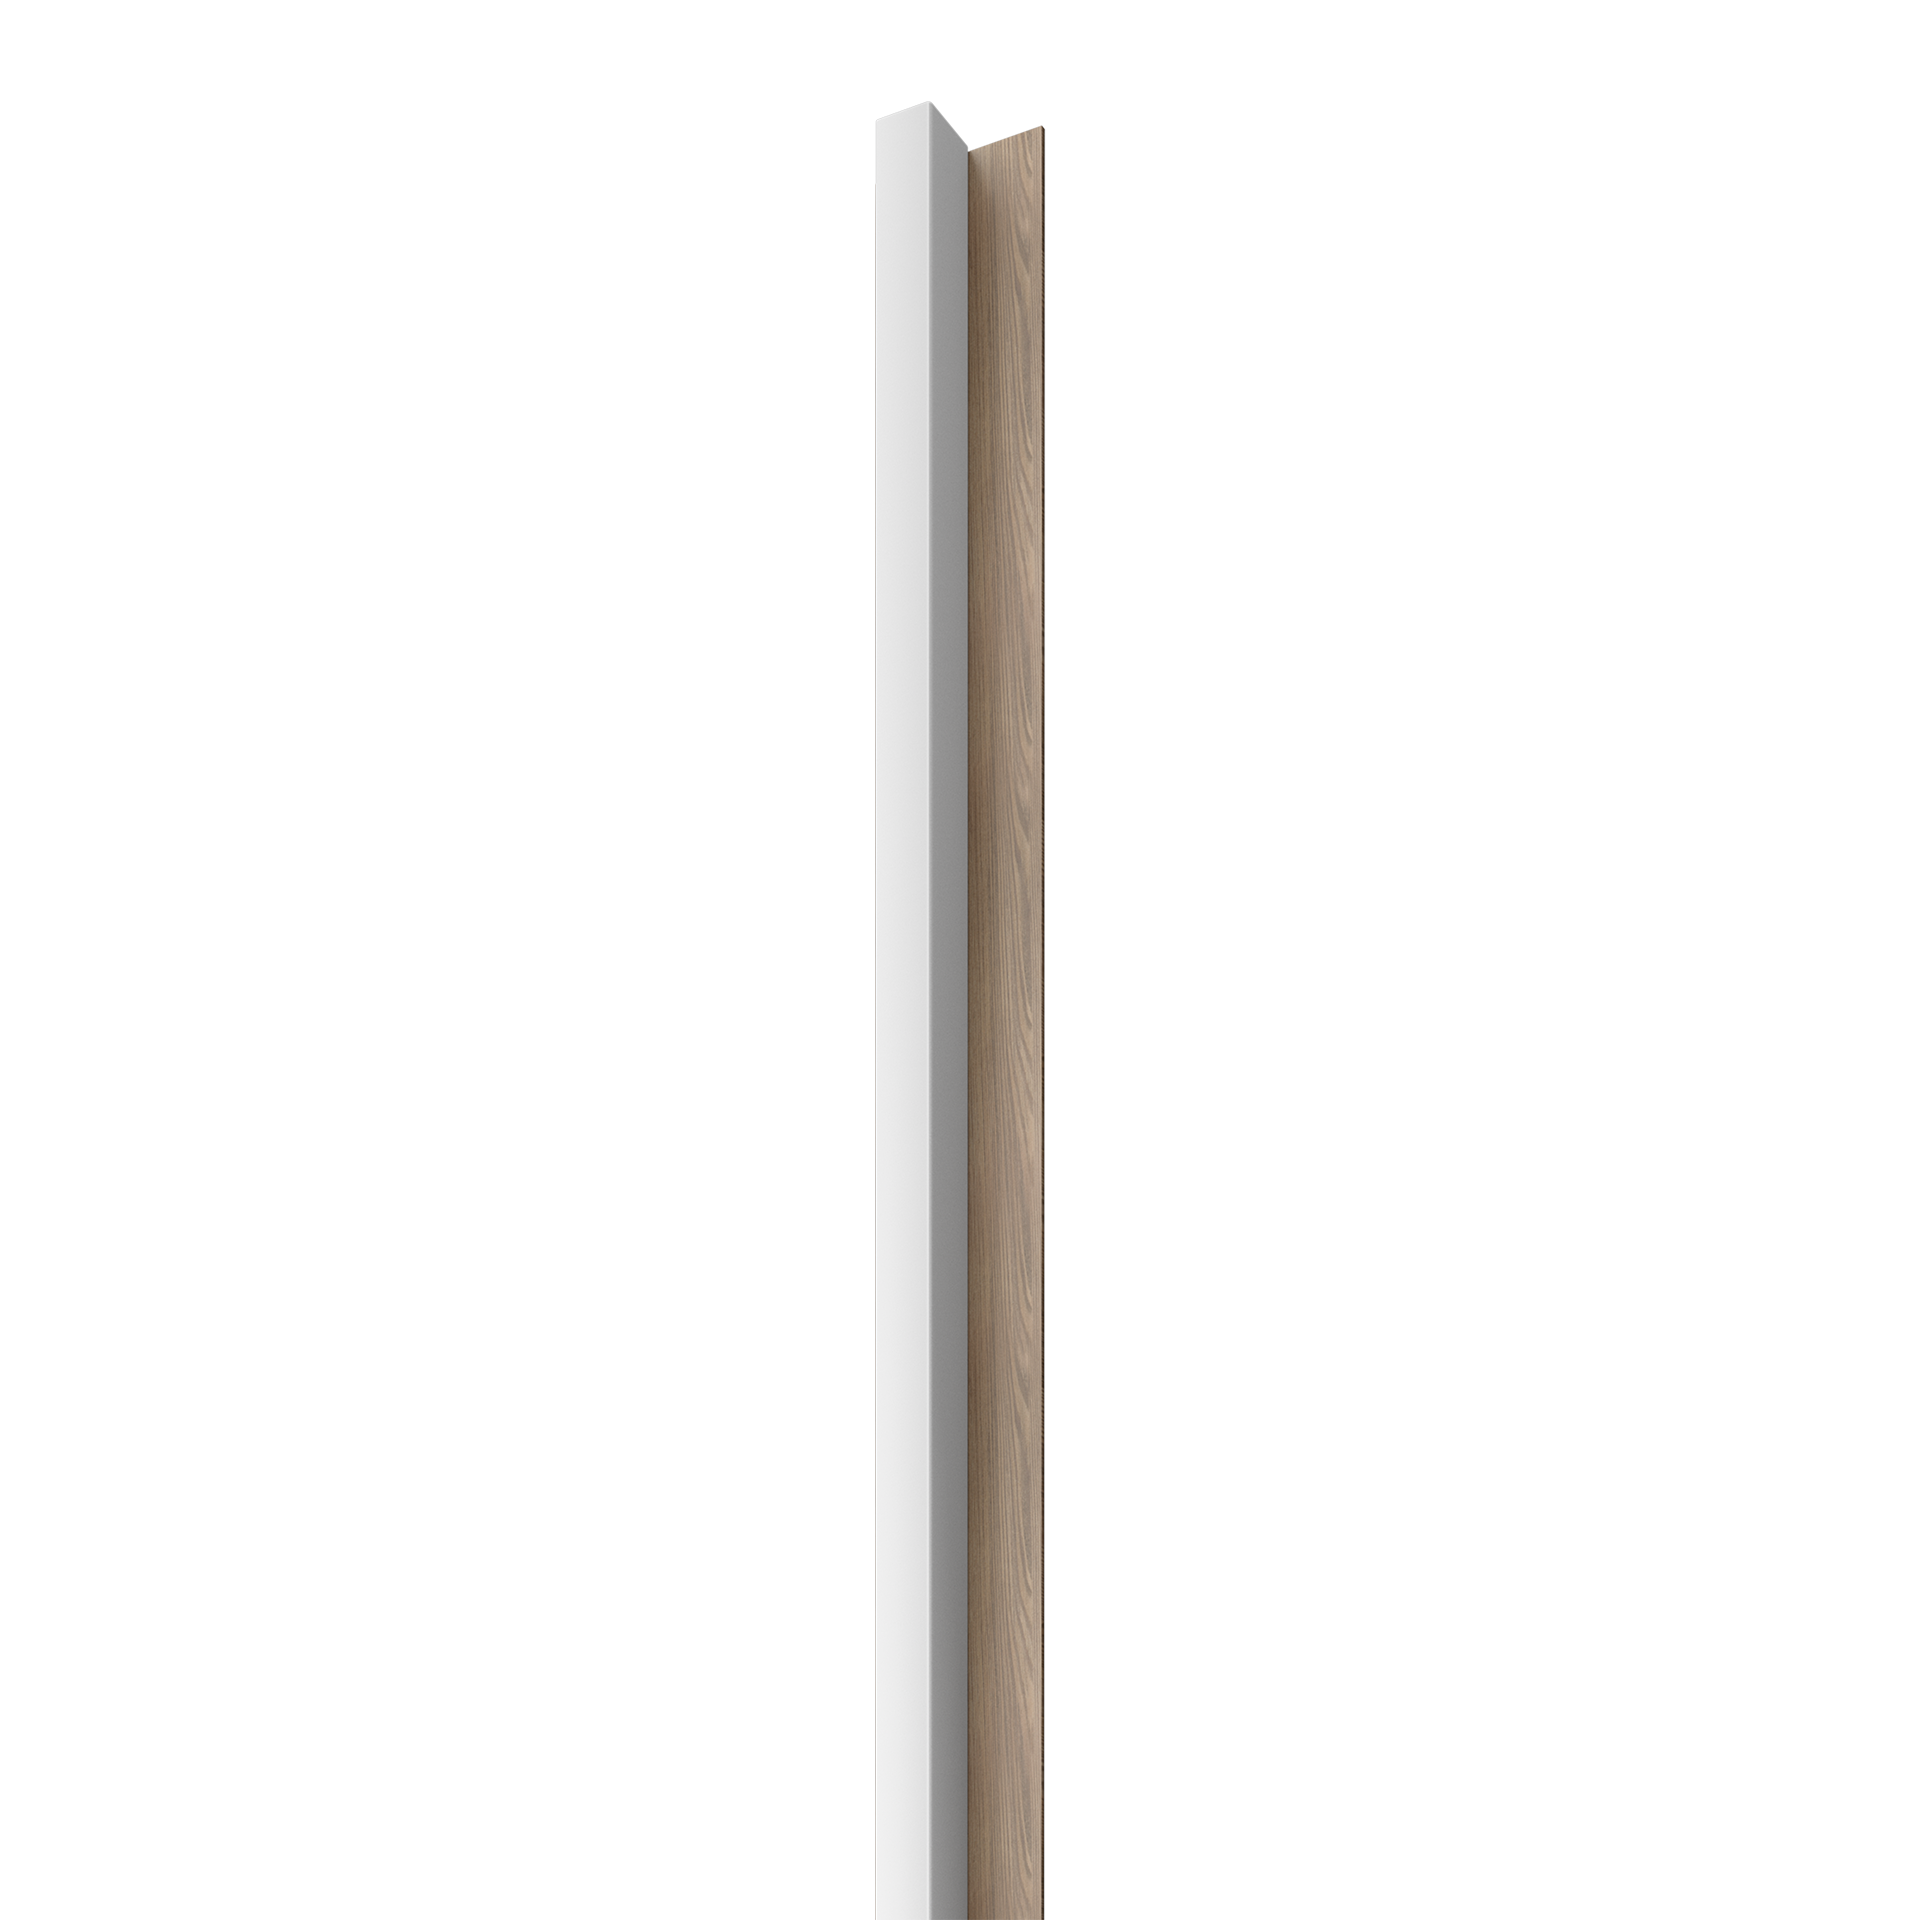 Dřevěná lamela LINEA 1 - bílá / dub 2750 x 64 x 40 mm cena za balení